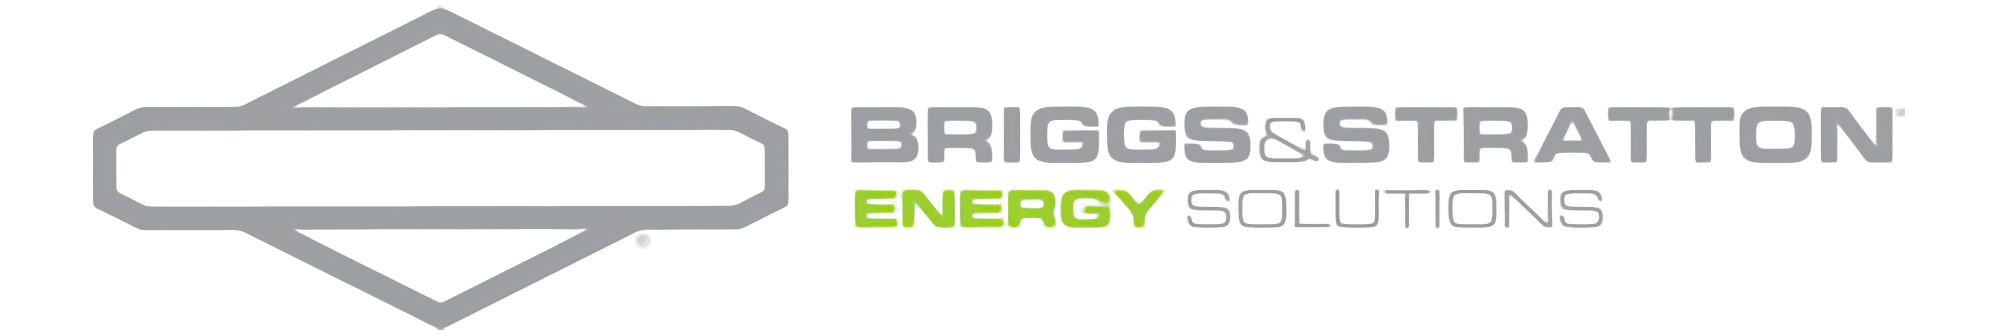 Briggs & stratton logo